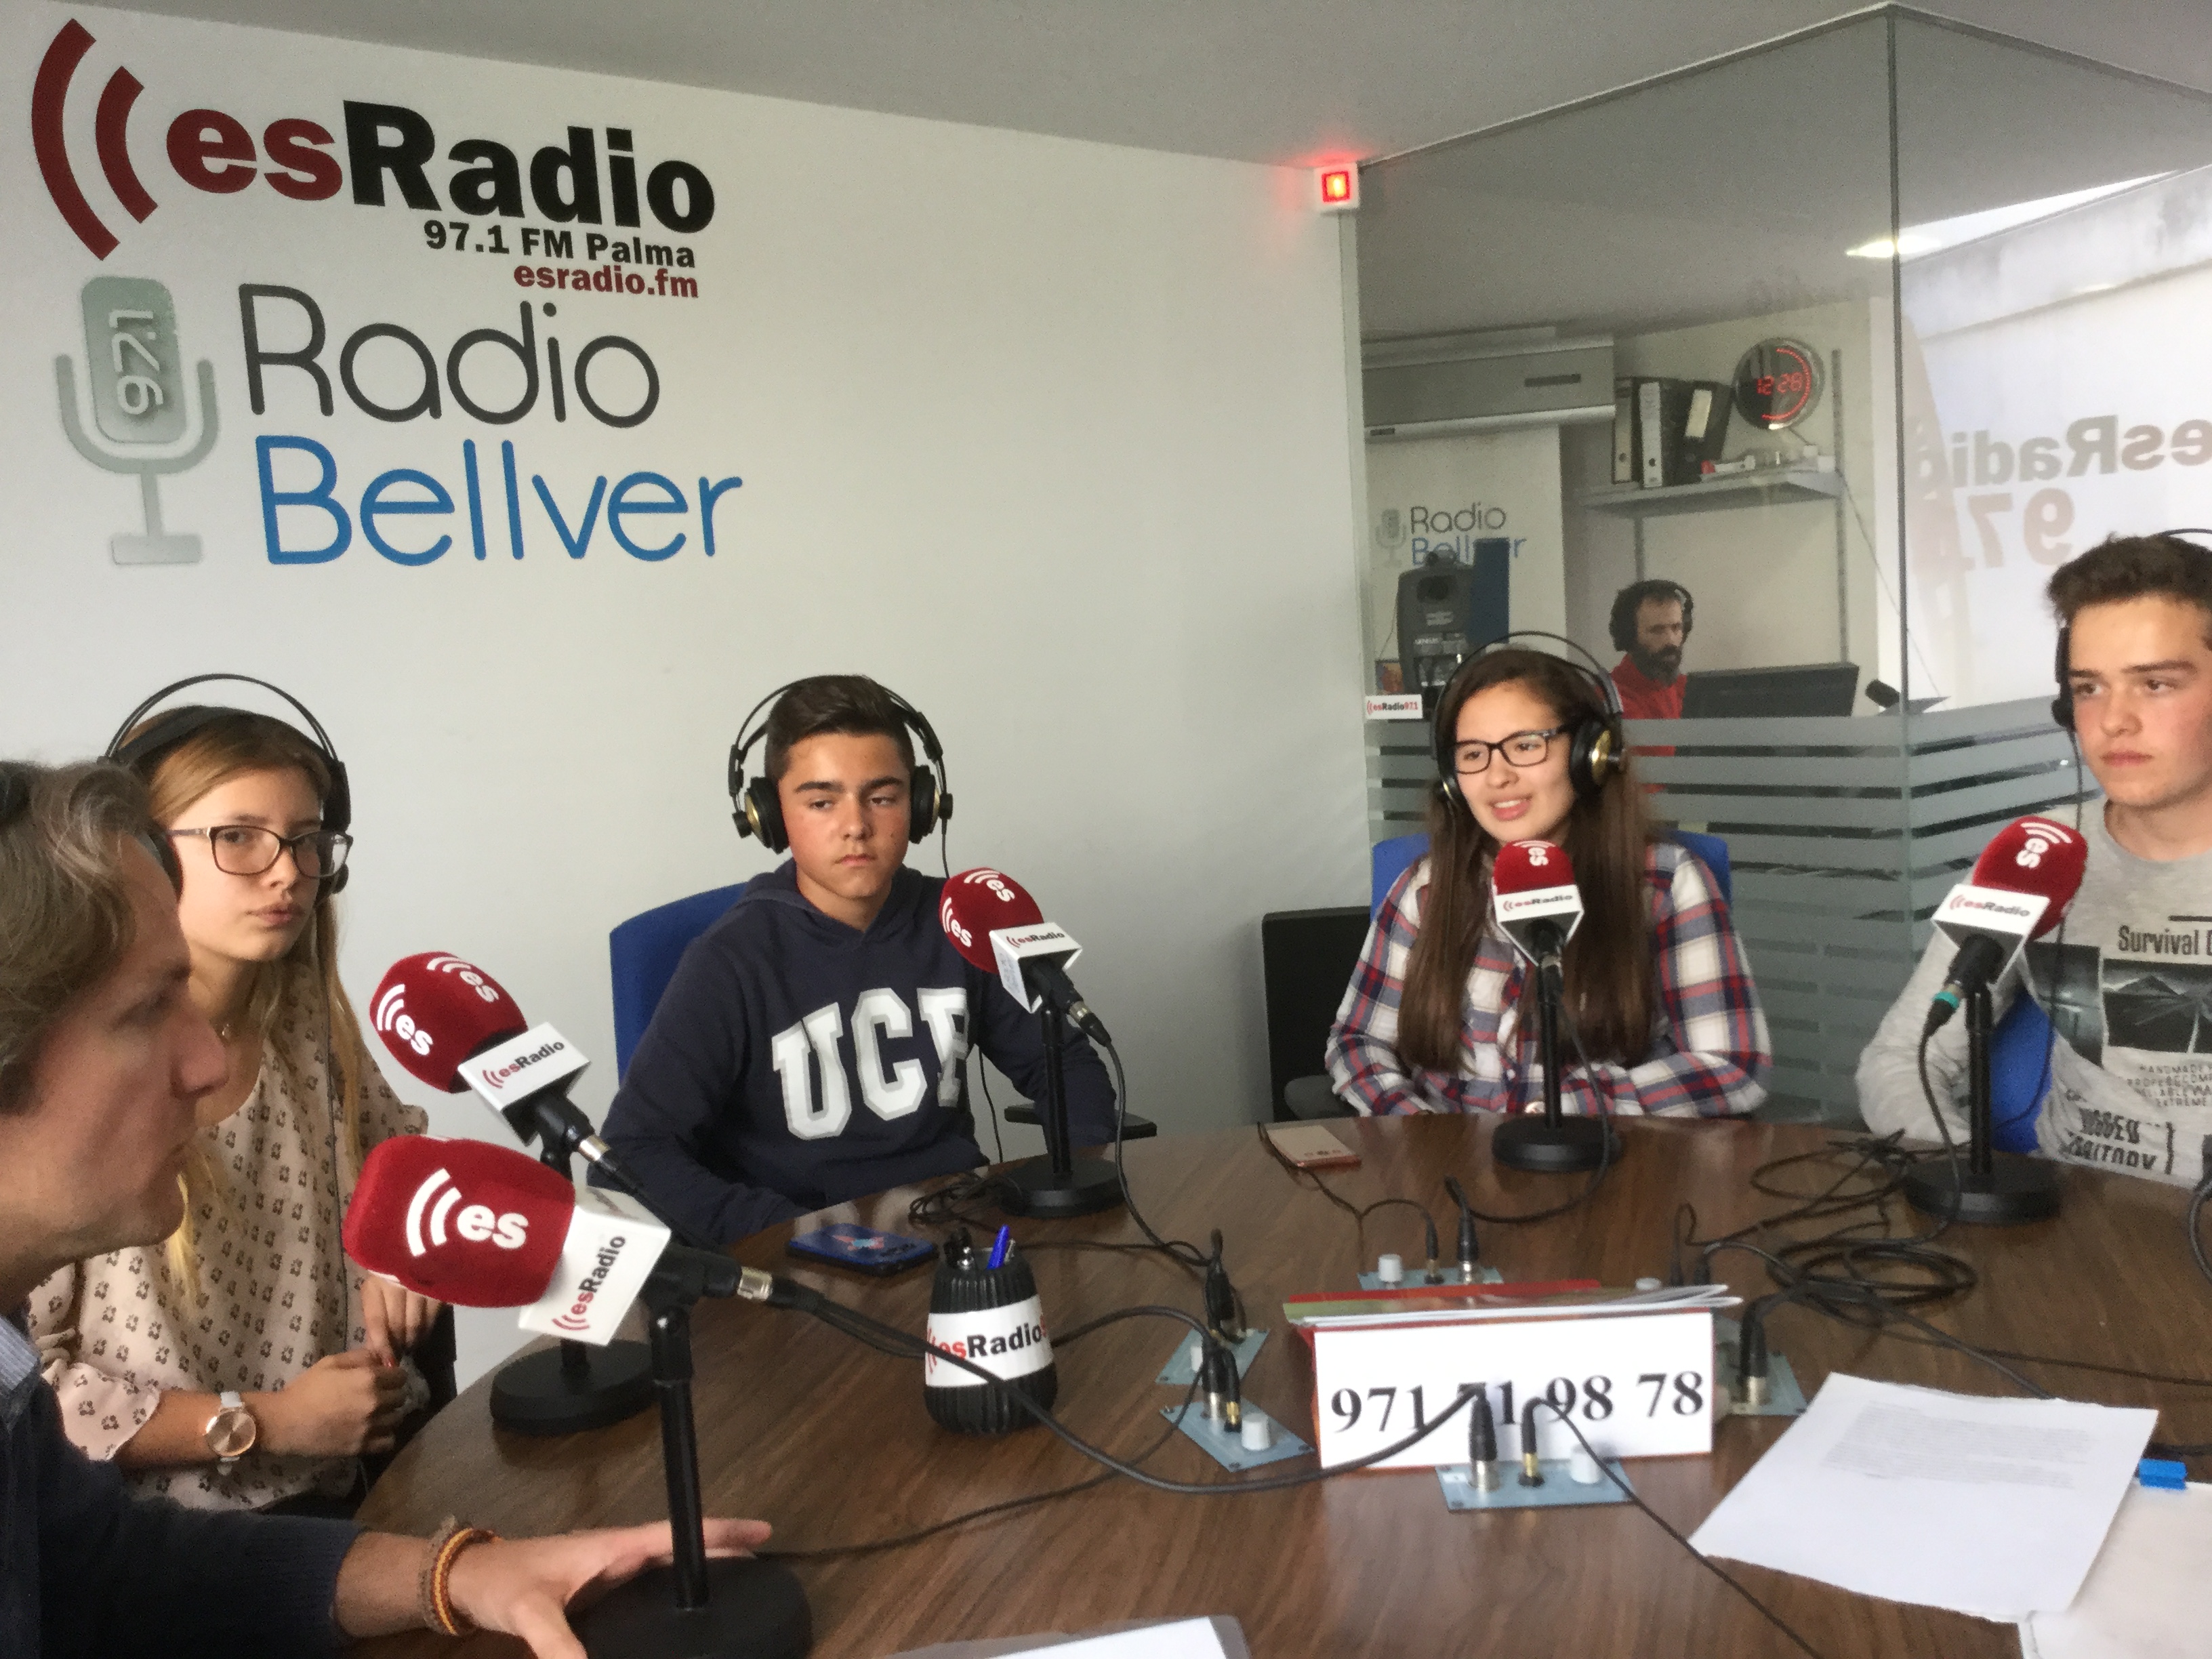 Los ganadores de 'debates en las aulas' visitan esRadio